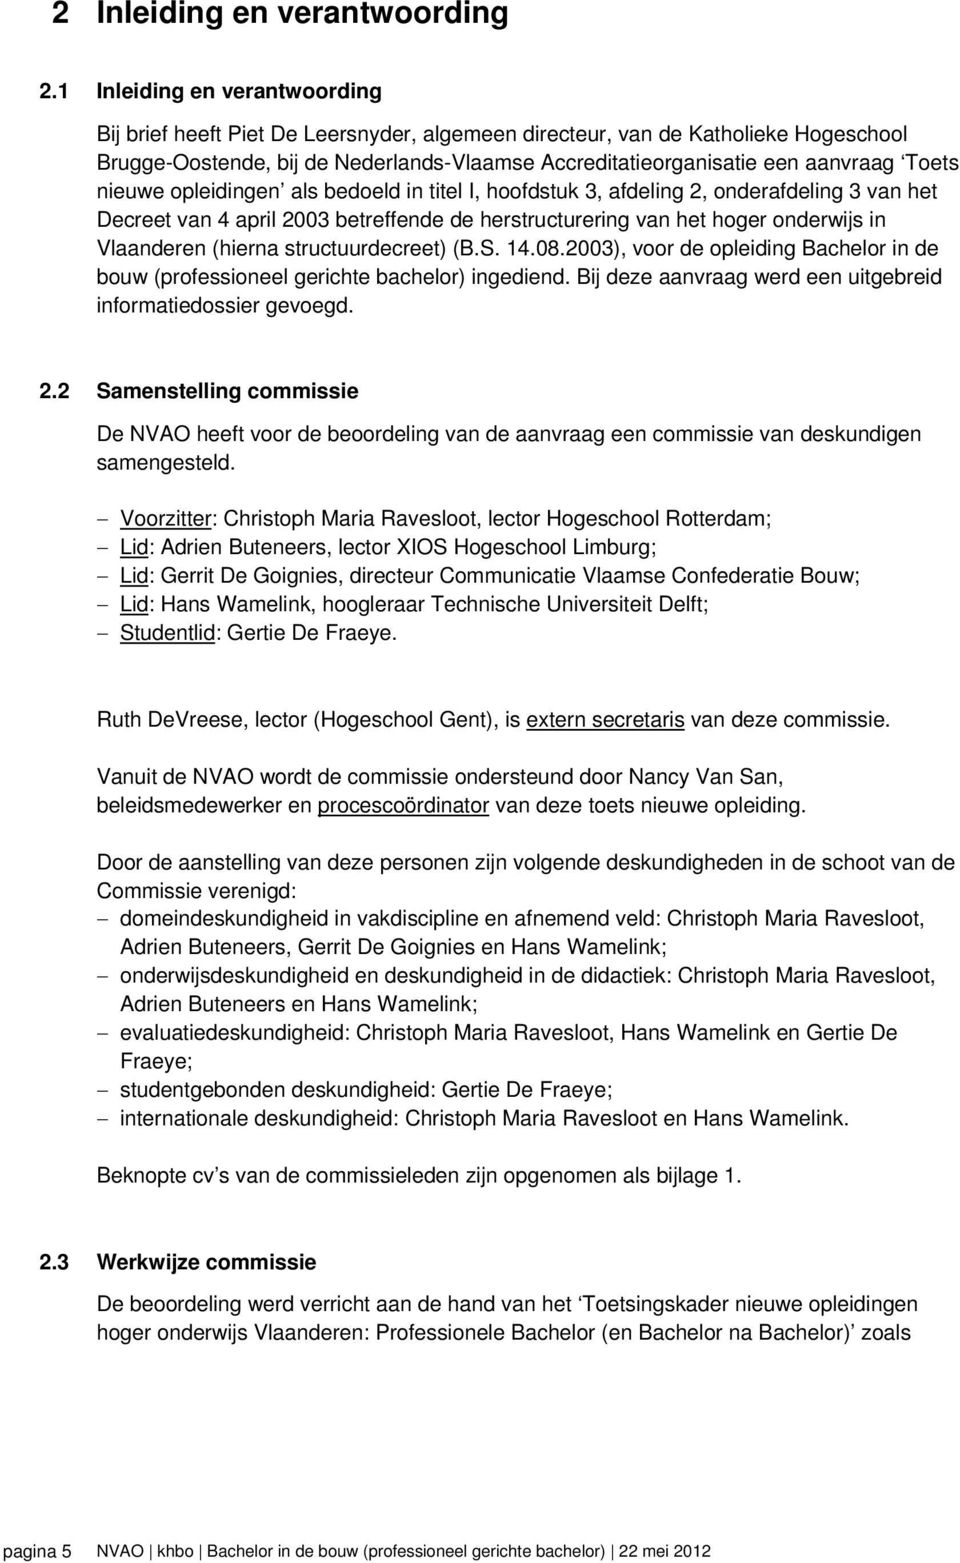 Toets nieuwe opleidingen als bedoeld in titel I, hoofdstuk 3, afdeling 2, onderafdeling 3 van het Decreet van 4 april 2003 betreffende de herstructurering van het hoger onderwijs in Vlaanderen